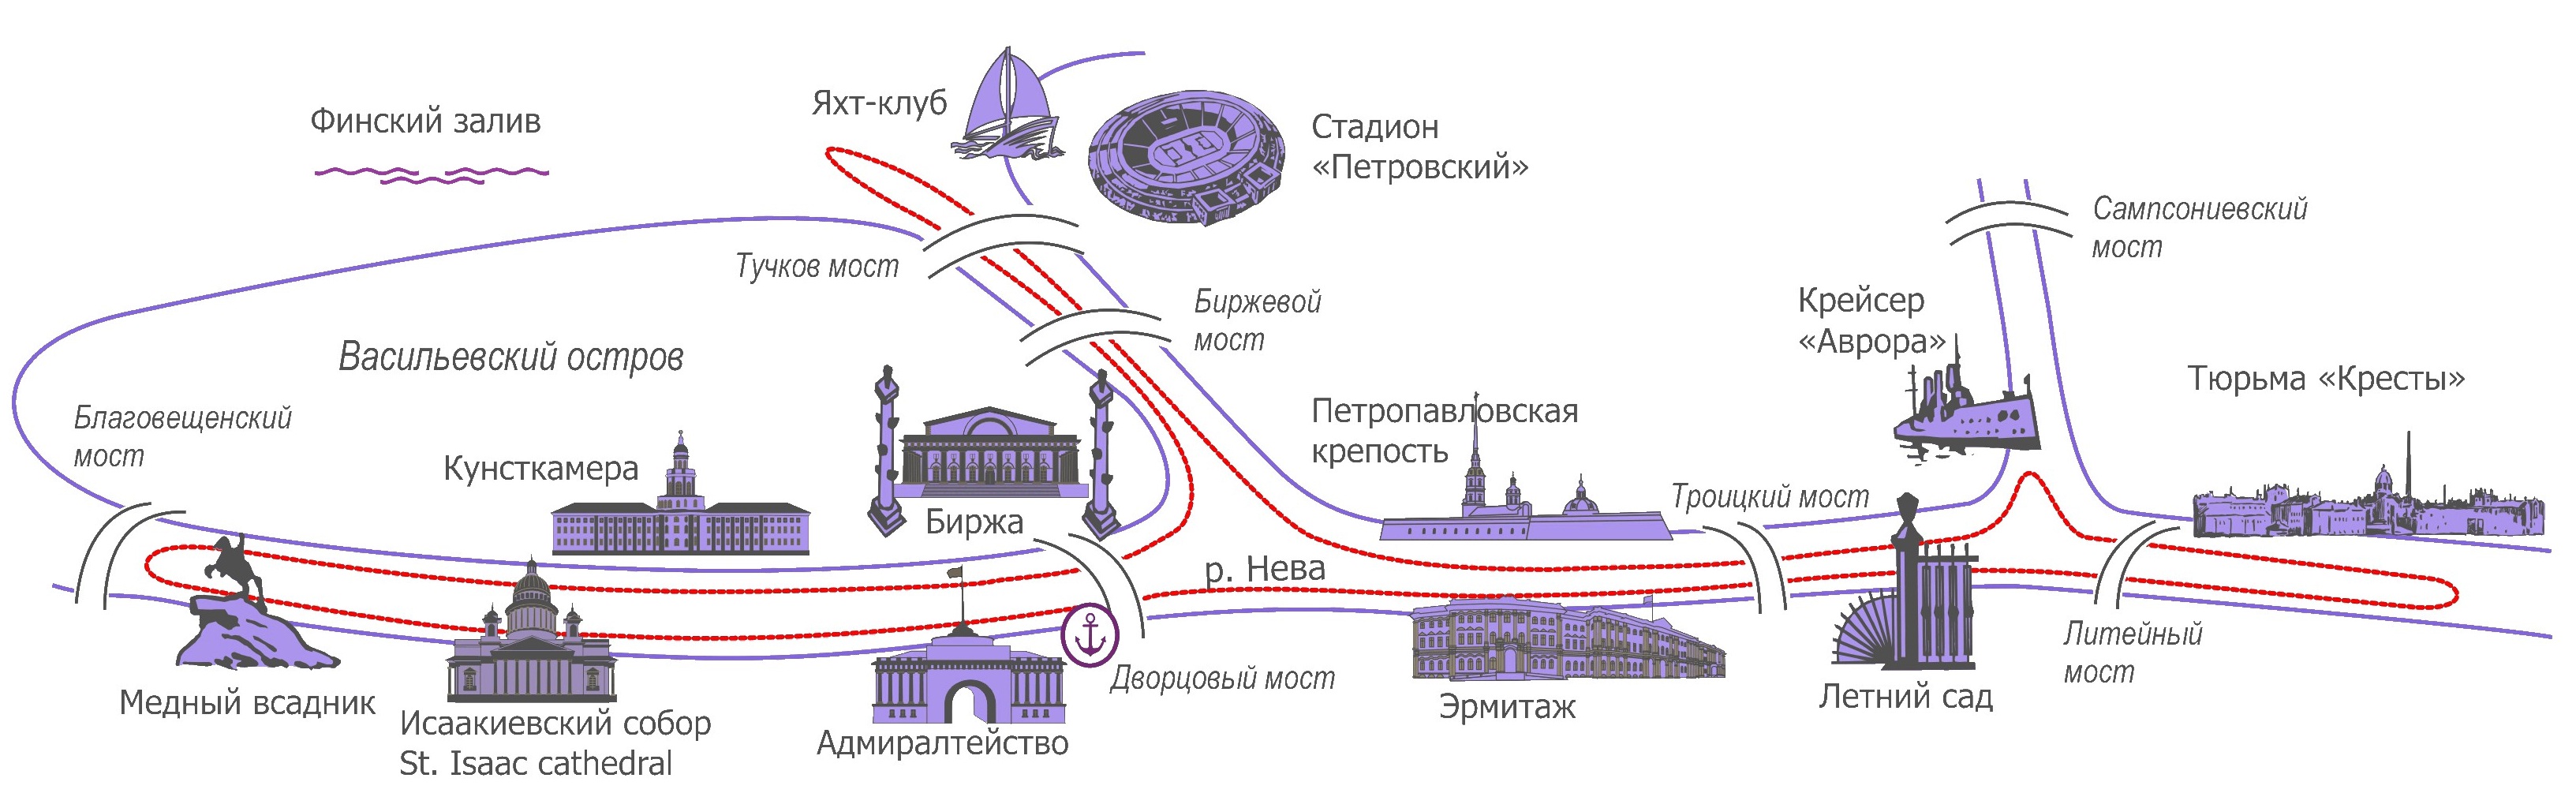 Схема мостов в Санкт-Петербурге